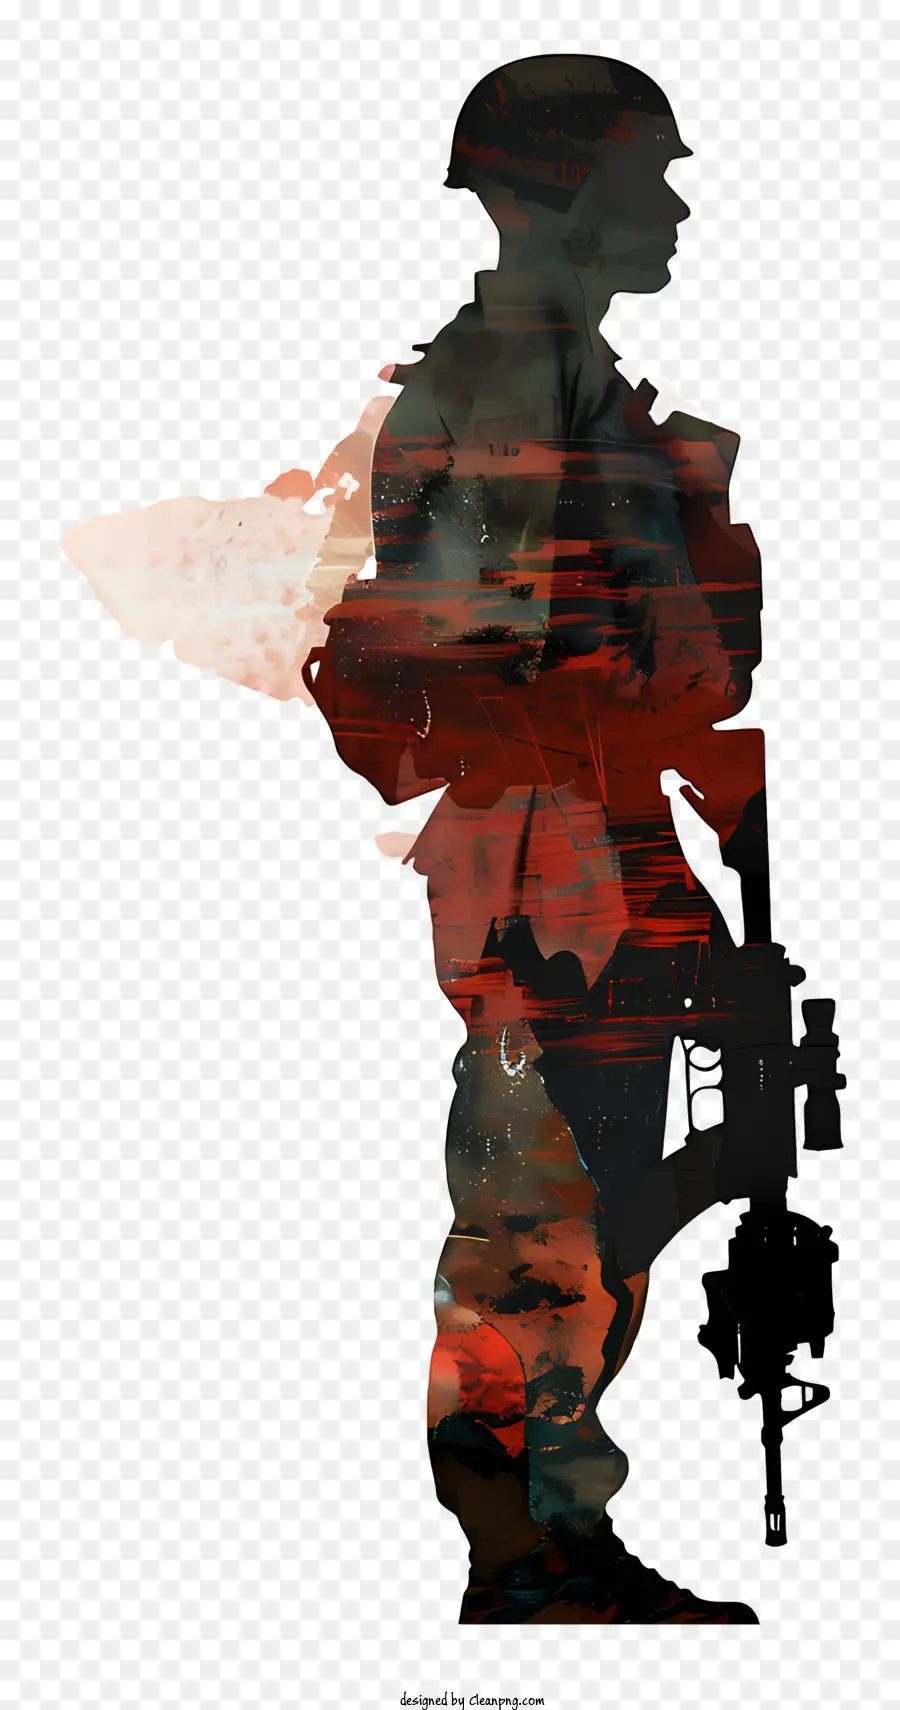 Soldier Silhouette - Soldat mit Gewehr vor Felsen steht